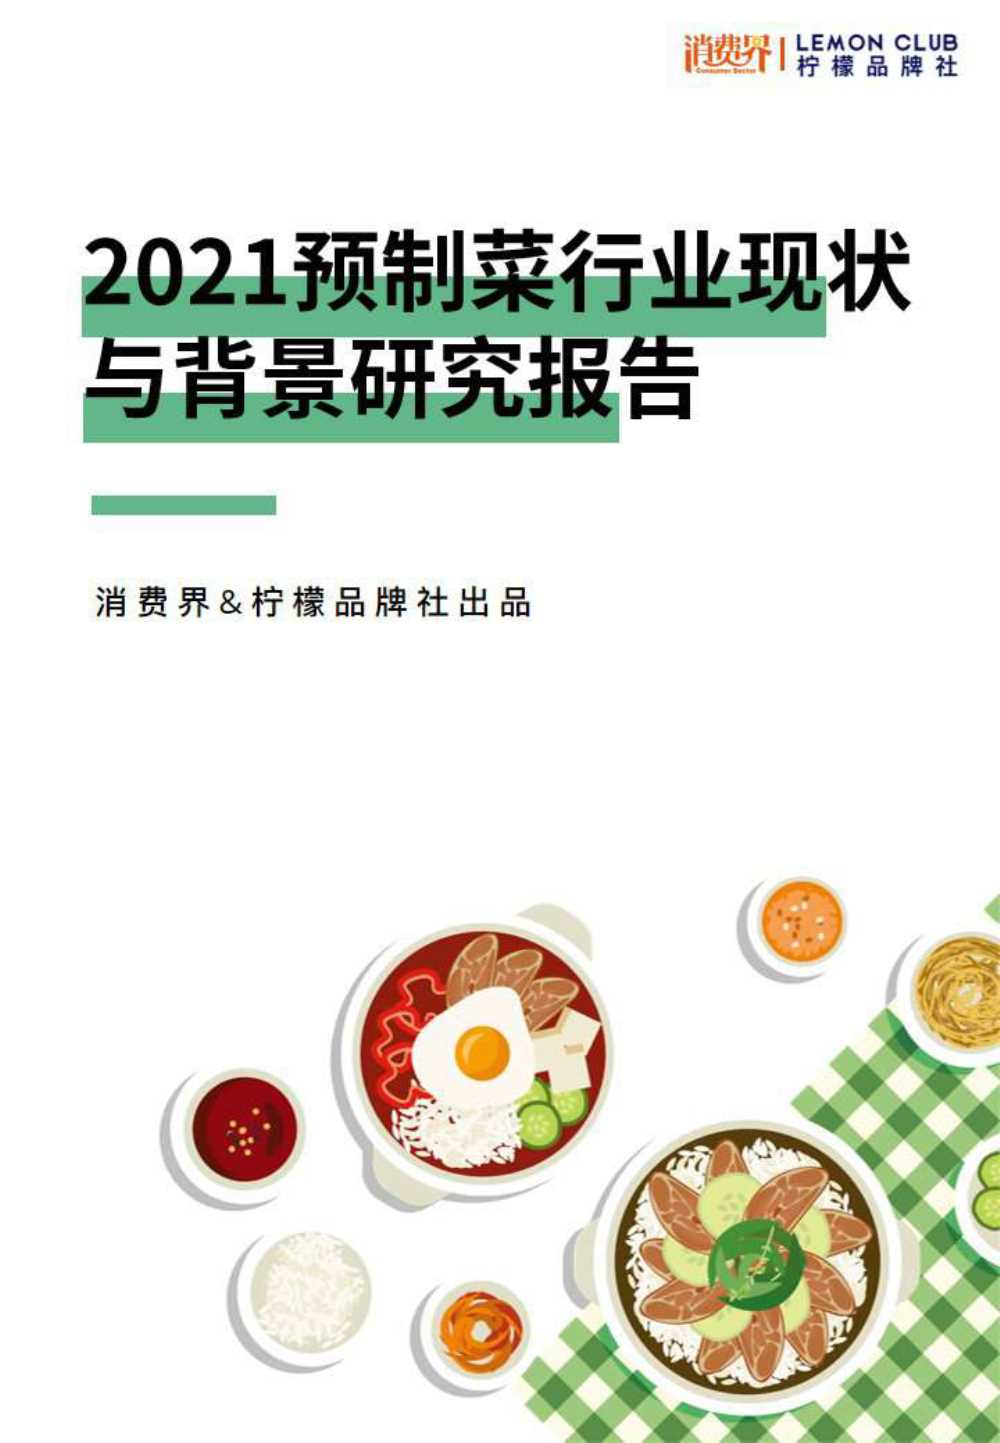 柠檬品牌社-2021预制菜行业现状与背景研究报告-2021.11-47页